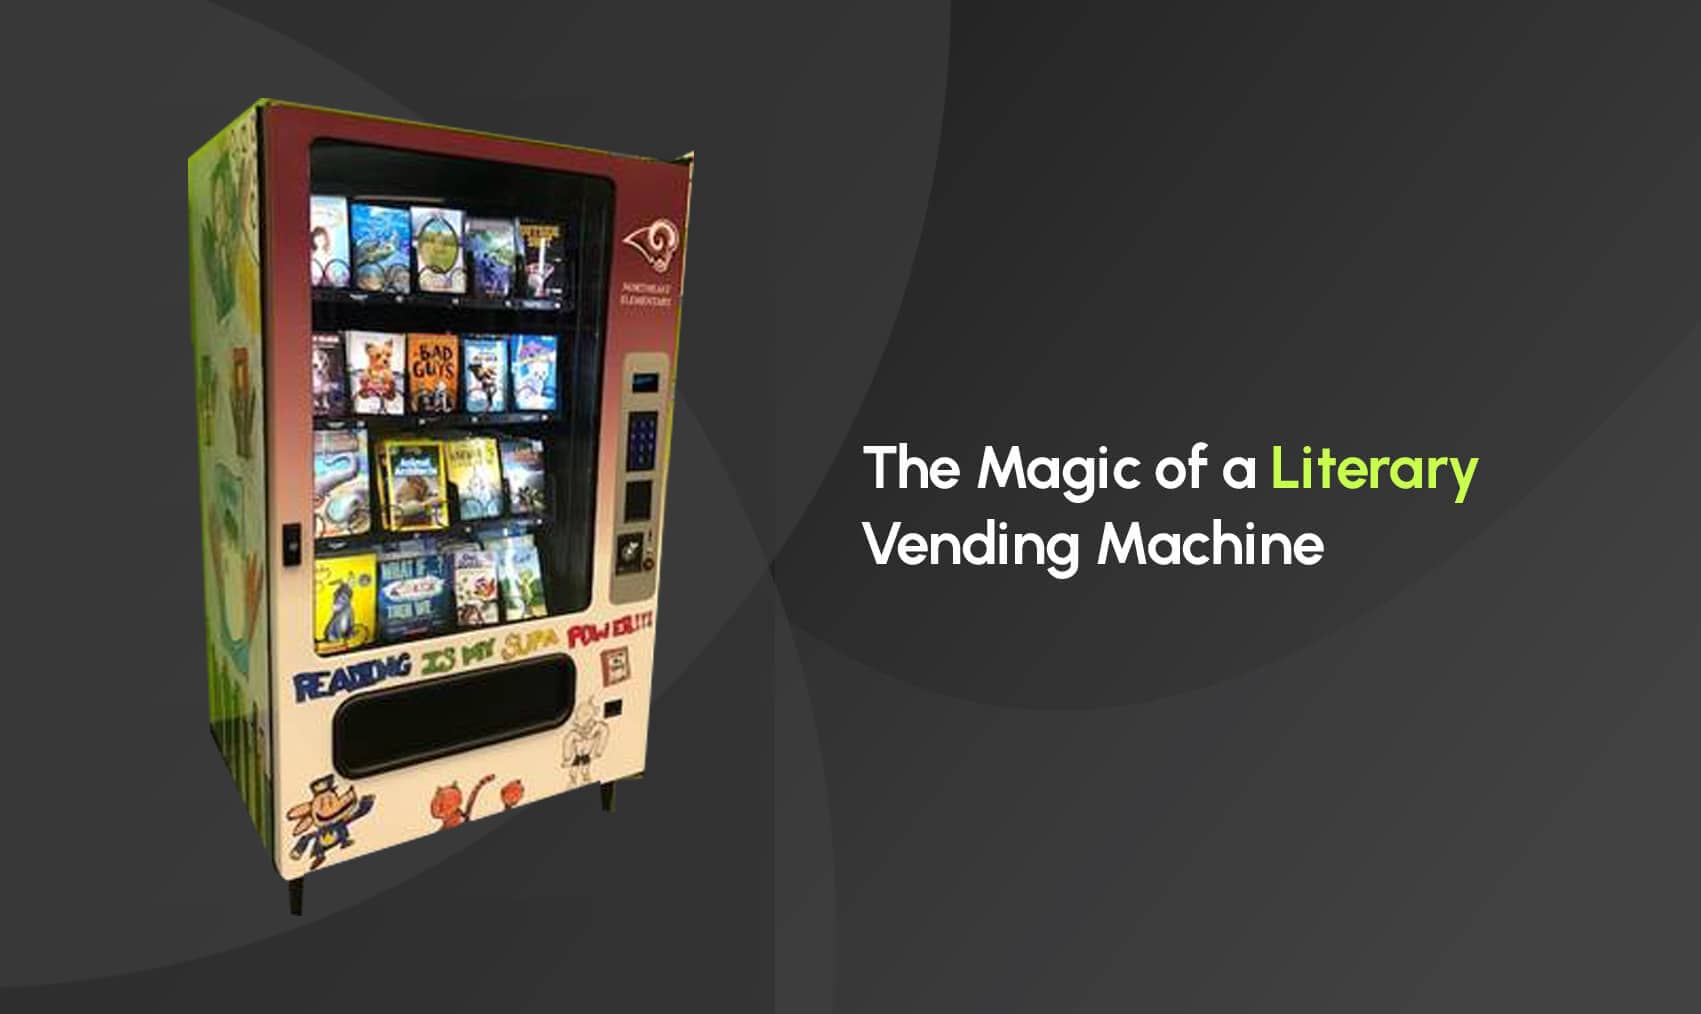 The Magic of a Literary Vending Machine